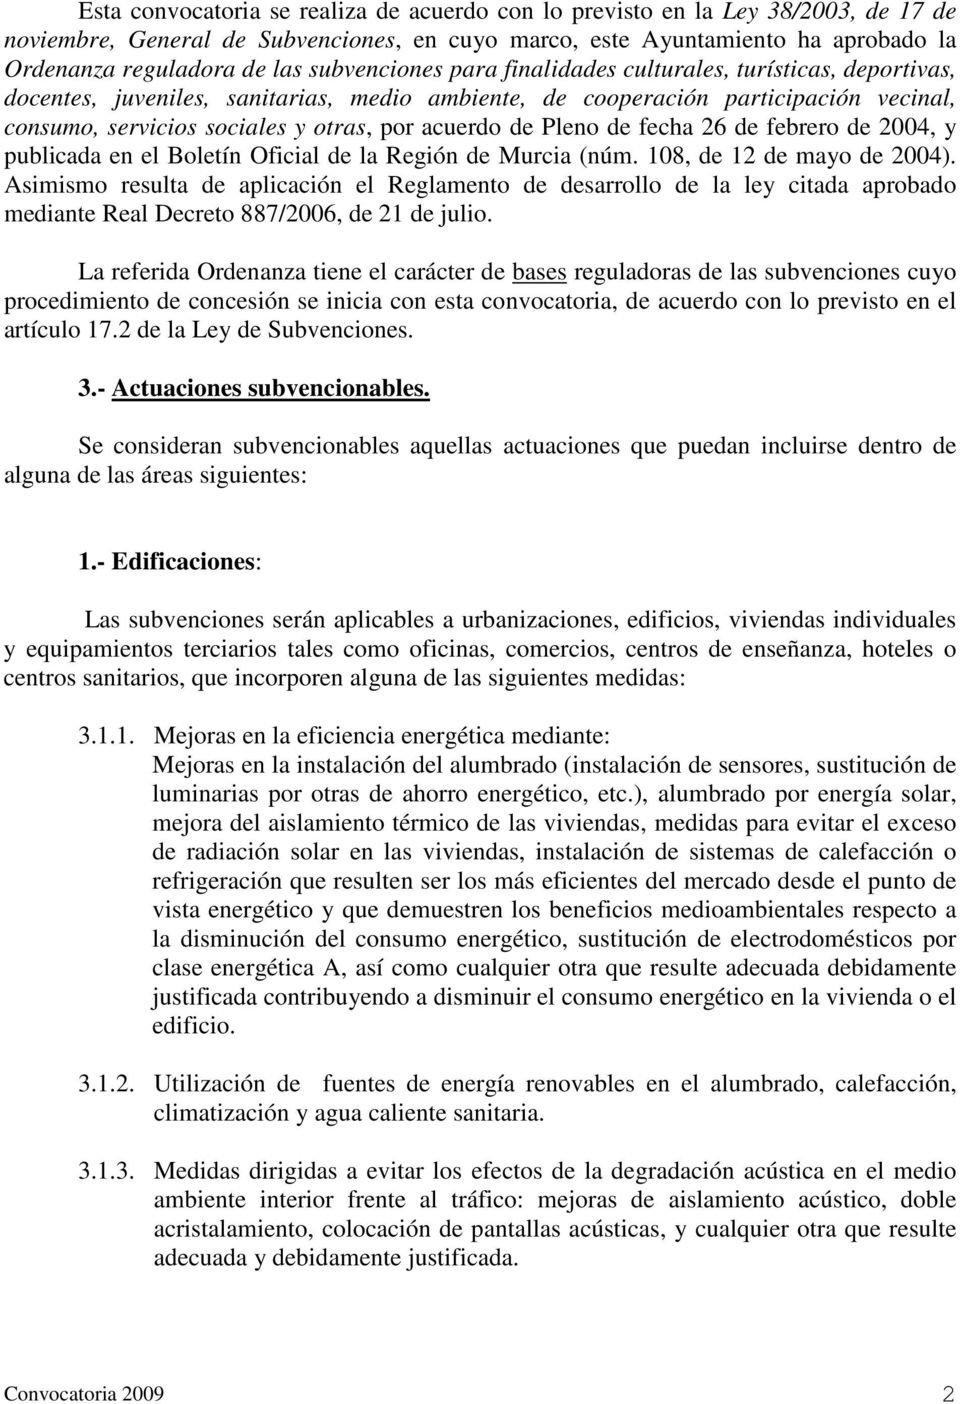 acuerdo de Pleno de fecha 26 de febrero de 2004, y publicada en el Boletín Oficial de la Región de Murcia (núm. 108, de 12 de mayo de 2004).